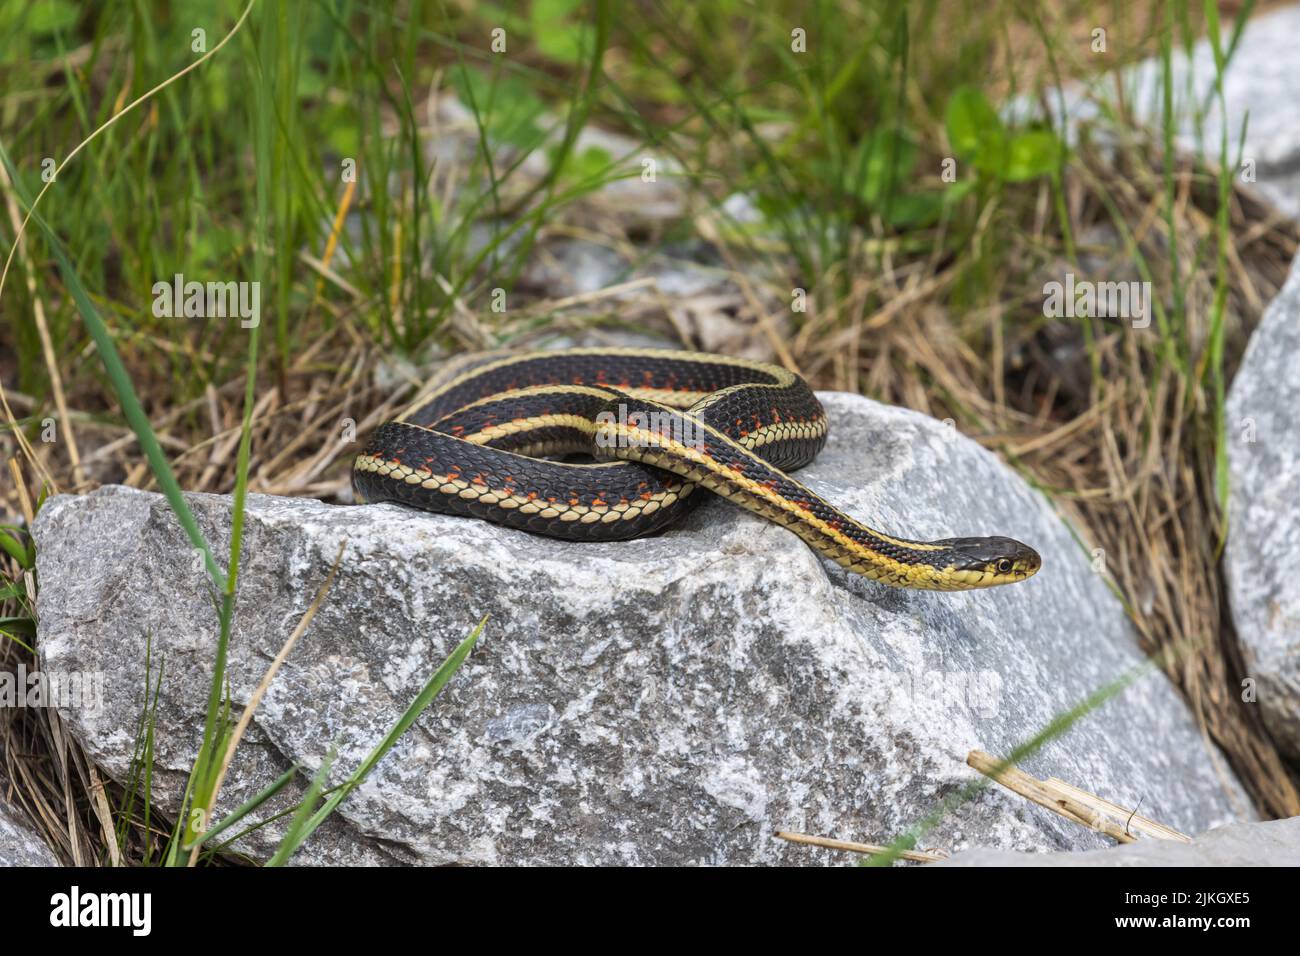 A closeup of a butler's garter snake on a stone Stock Photo